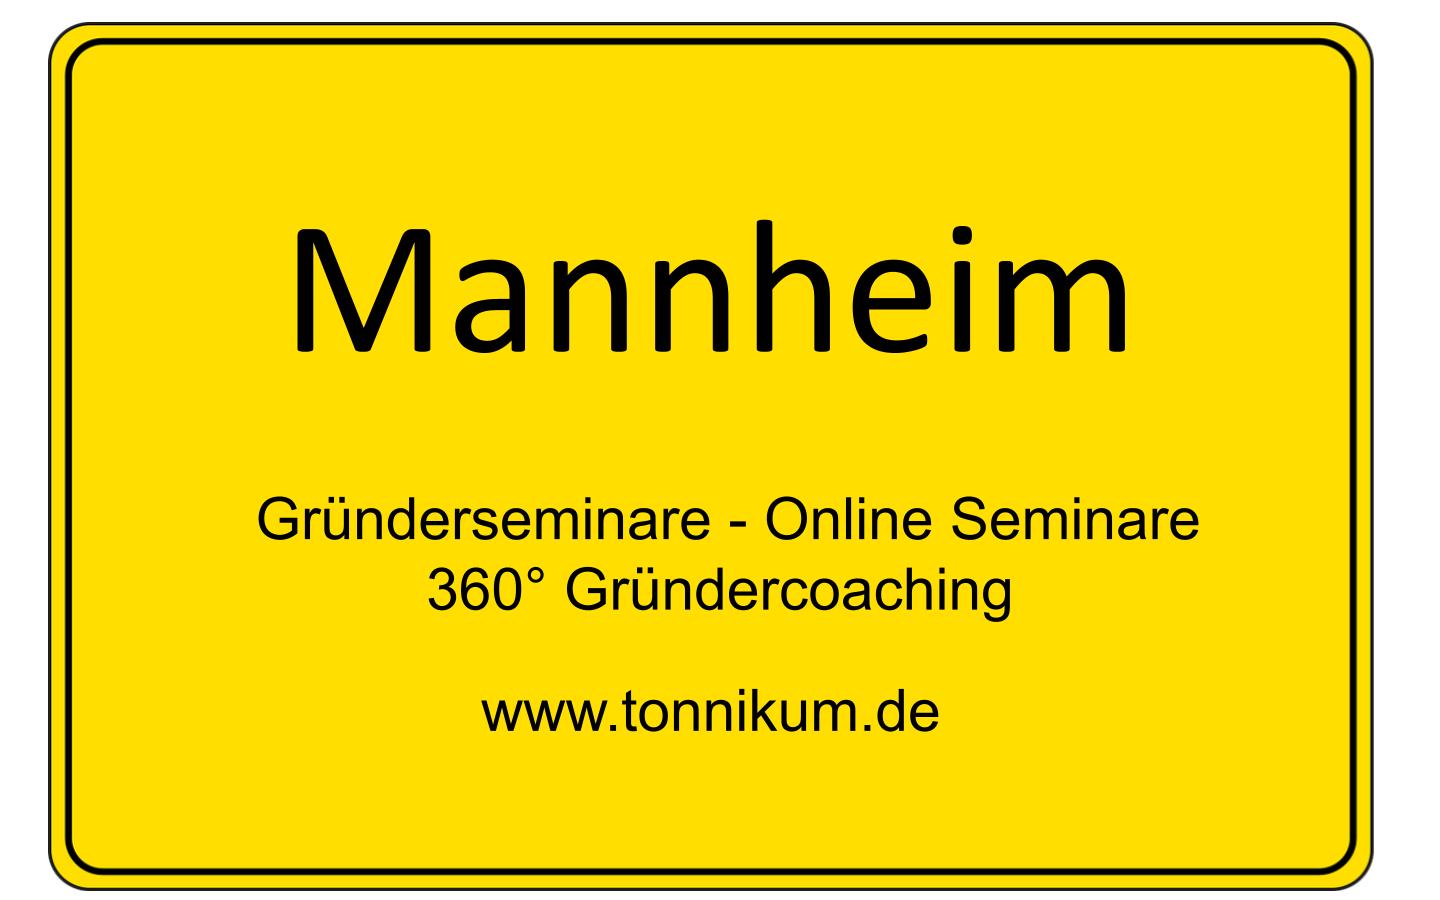 Mannheim Beratung Existenzgründung  ⇒ kostenloses Erstgespräch